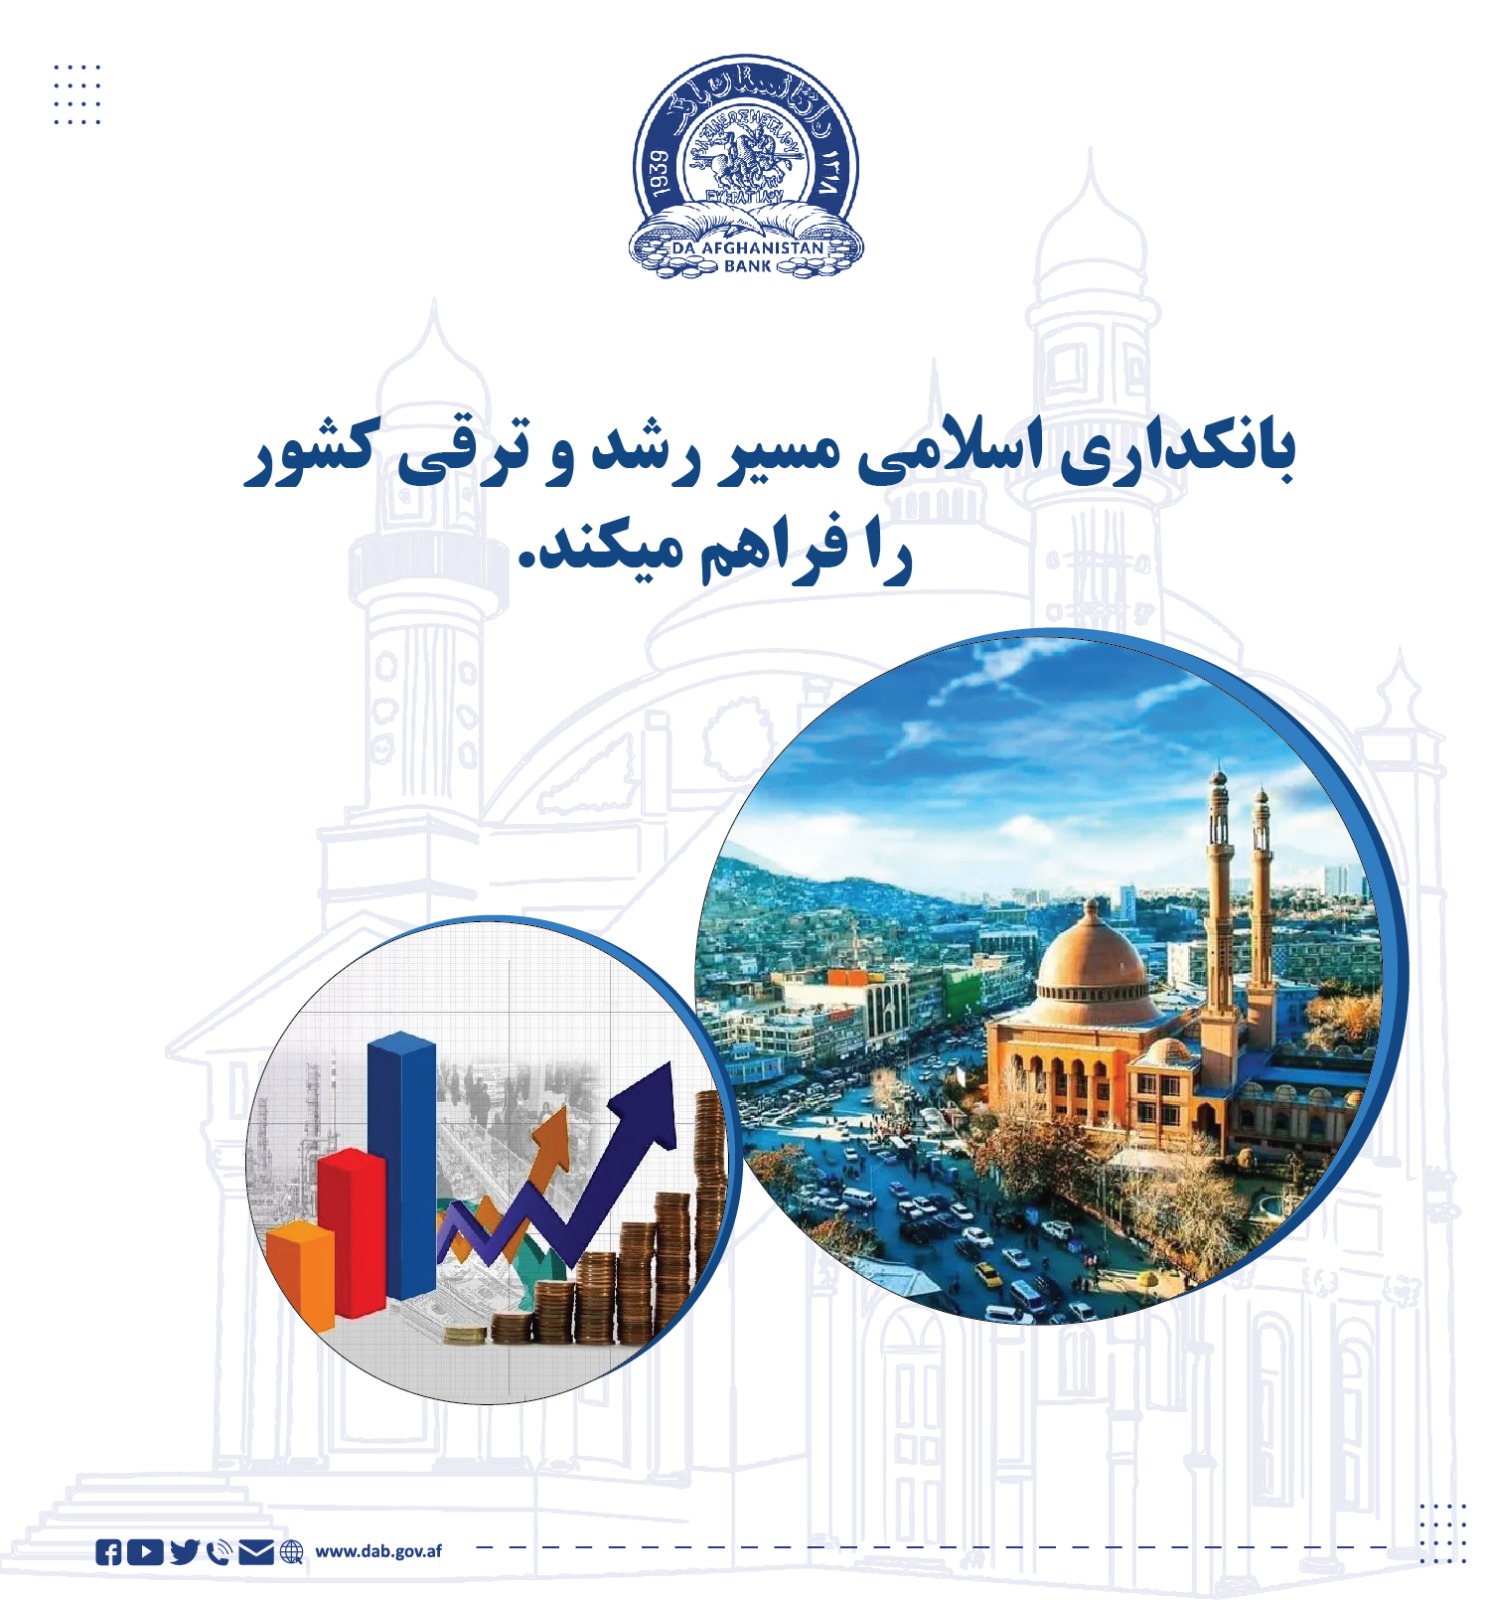 بانکداری اسلامی مسیر رشد و ترقی کشور را فراهم میکند